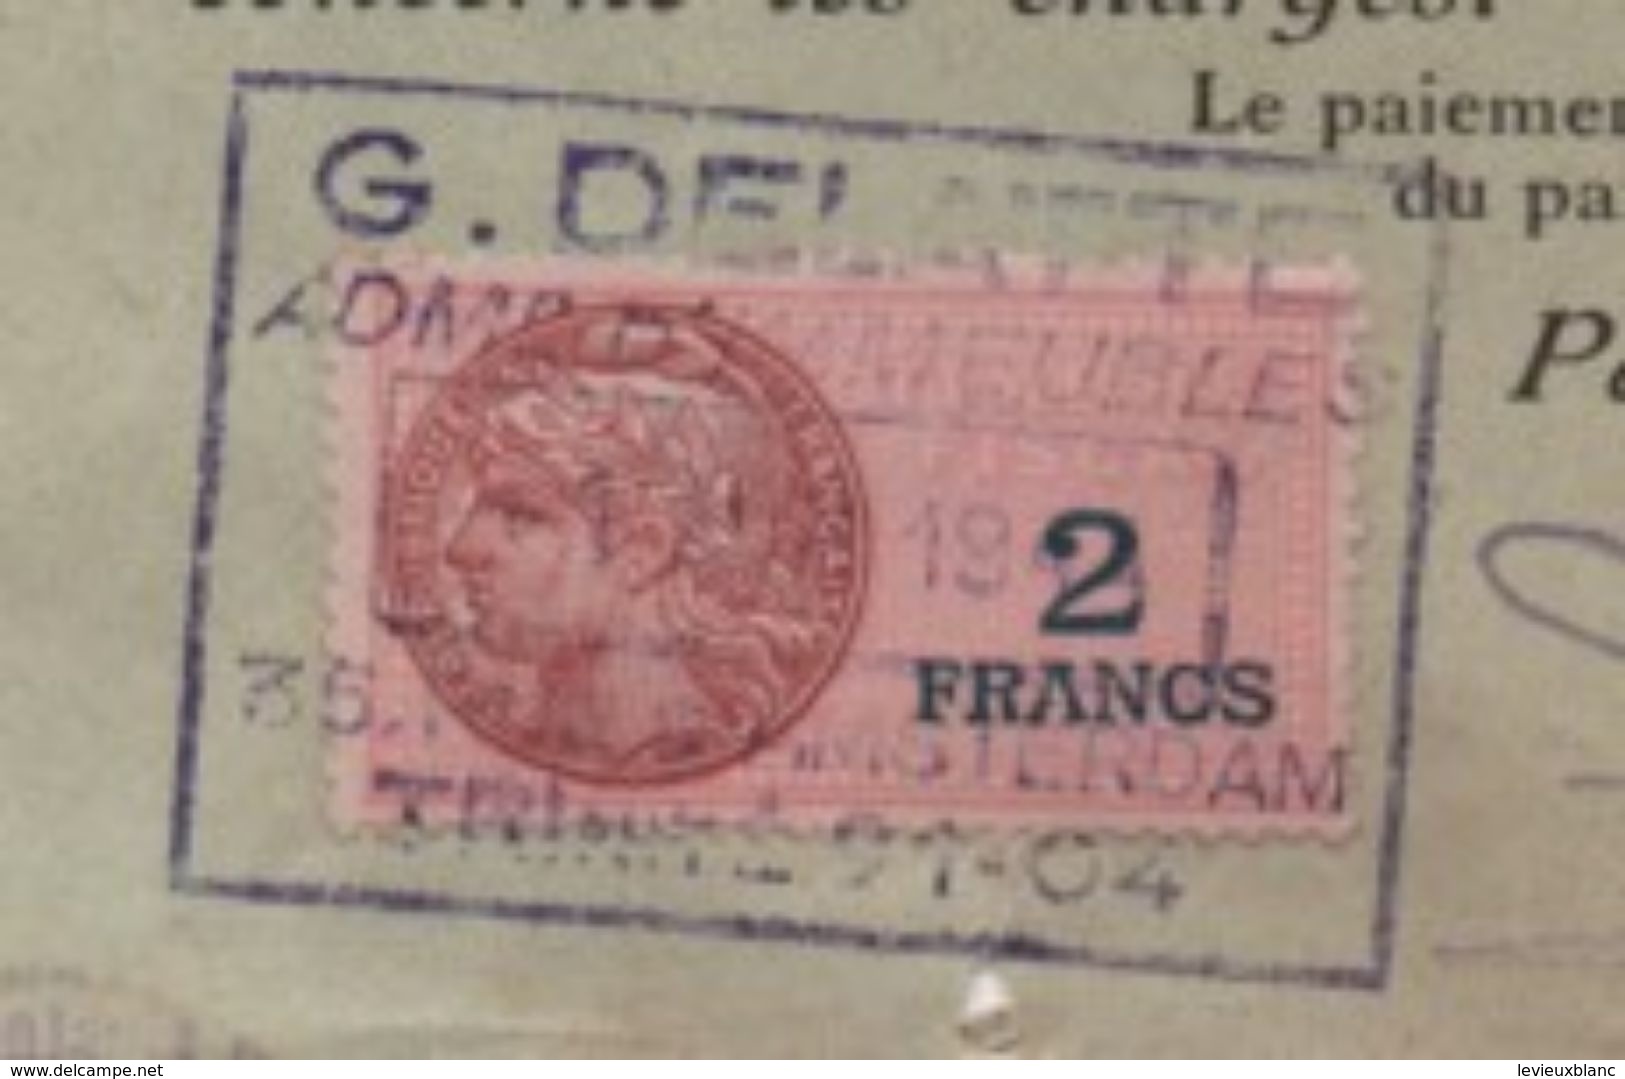 Quittance De Loyer /Reçu/Timbre Fiscal 2 Francs / Boulogne-Billancourt/ 1944                        QUIT15 - Non Classés